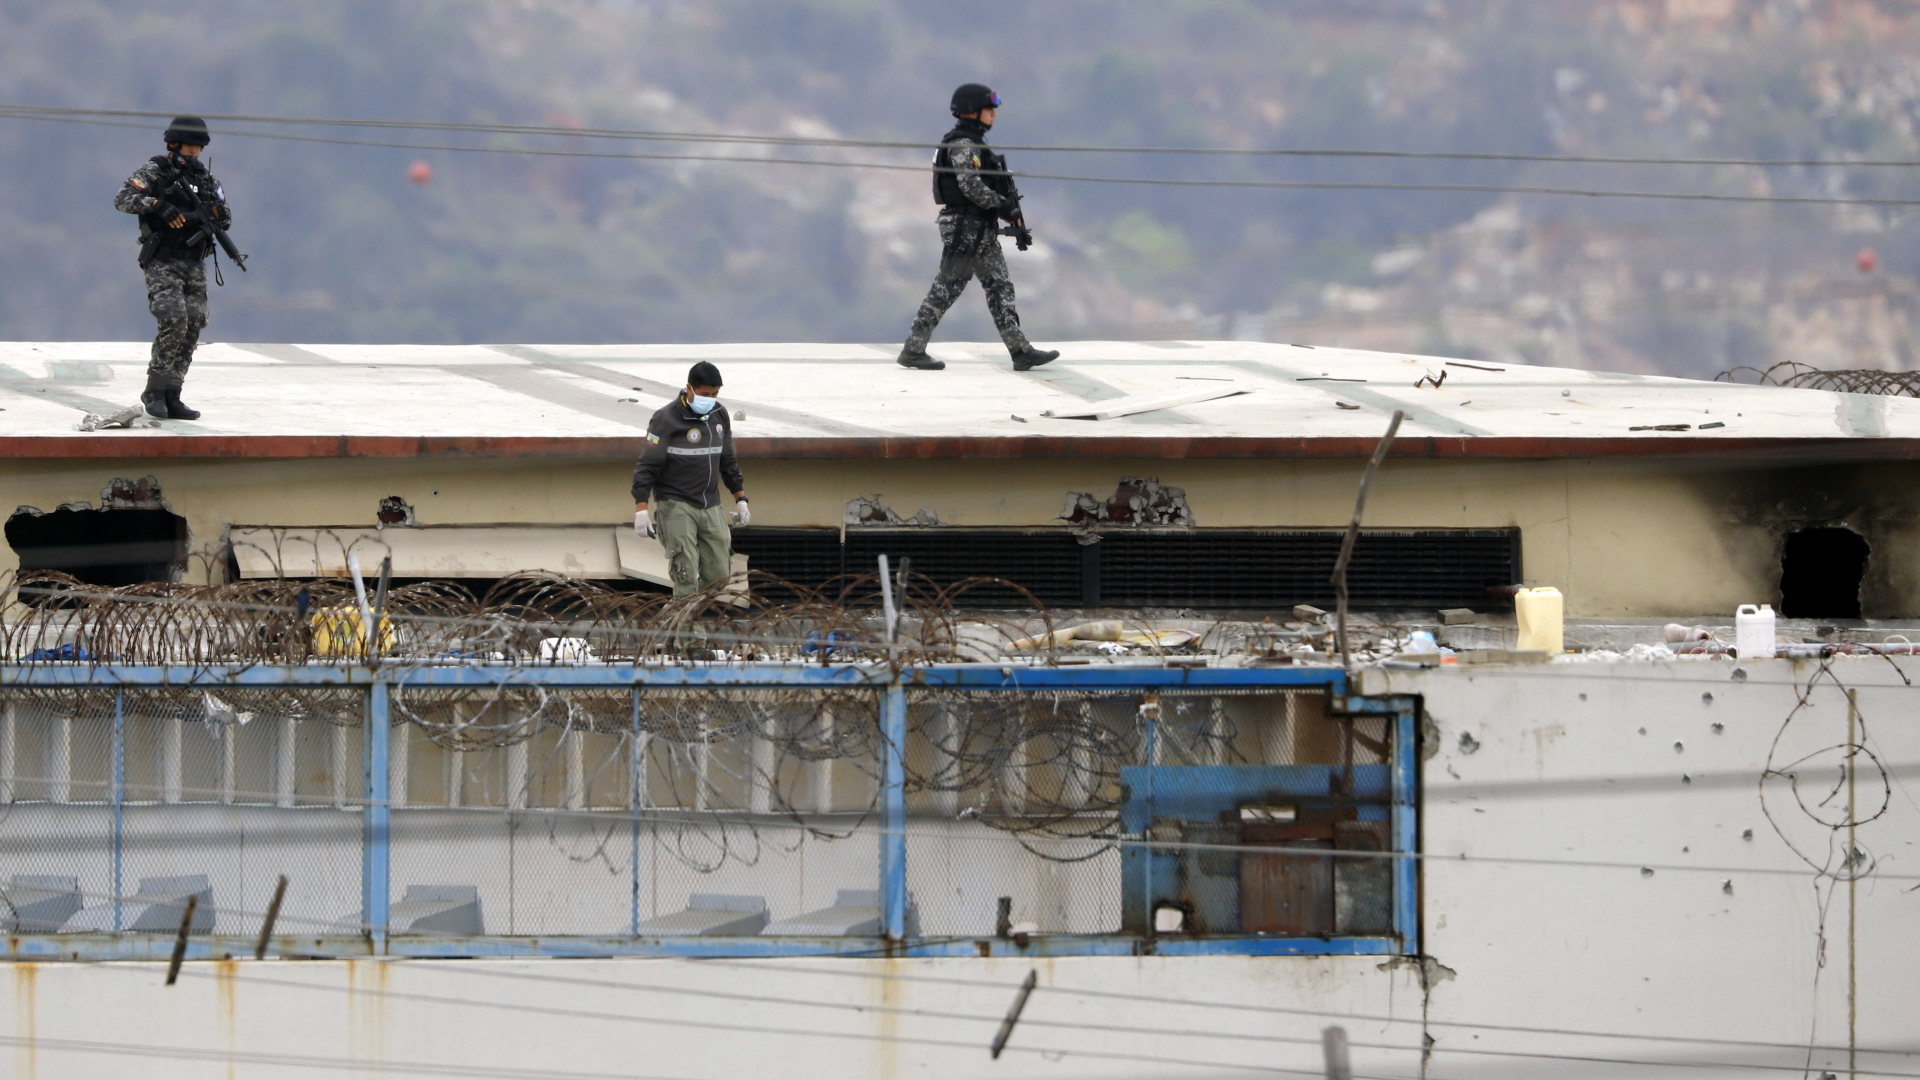 Polizisten laufen über das Dach eines Gefängnisses in Guayaquil, Ecuador. | dpa